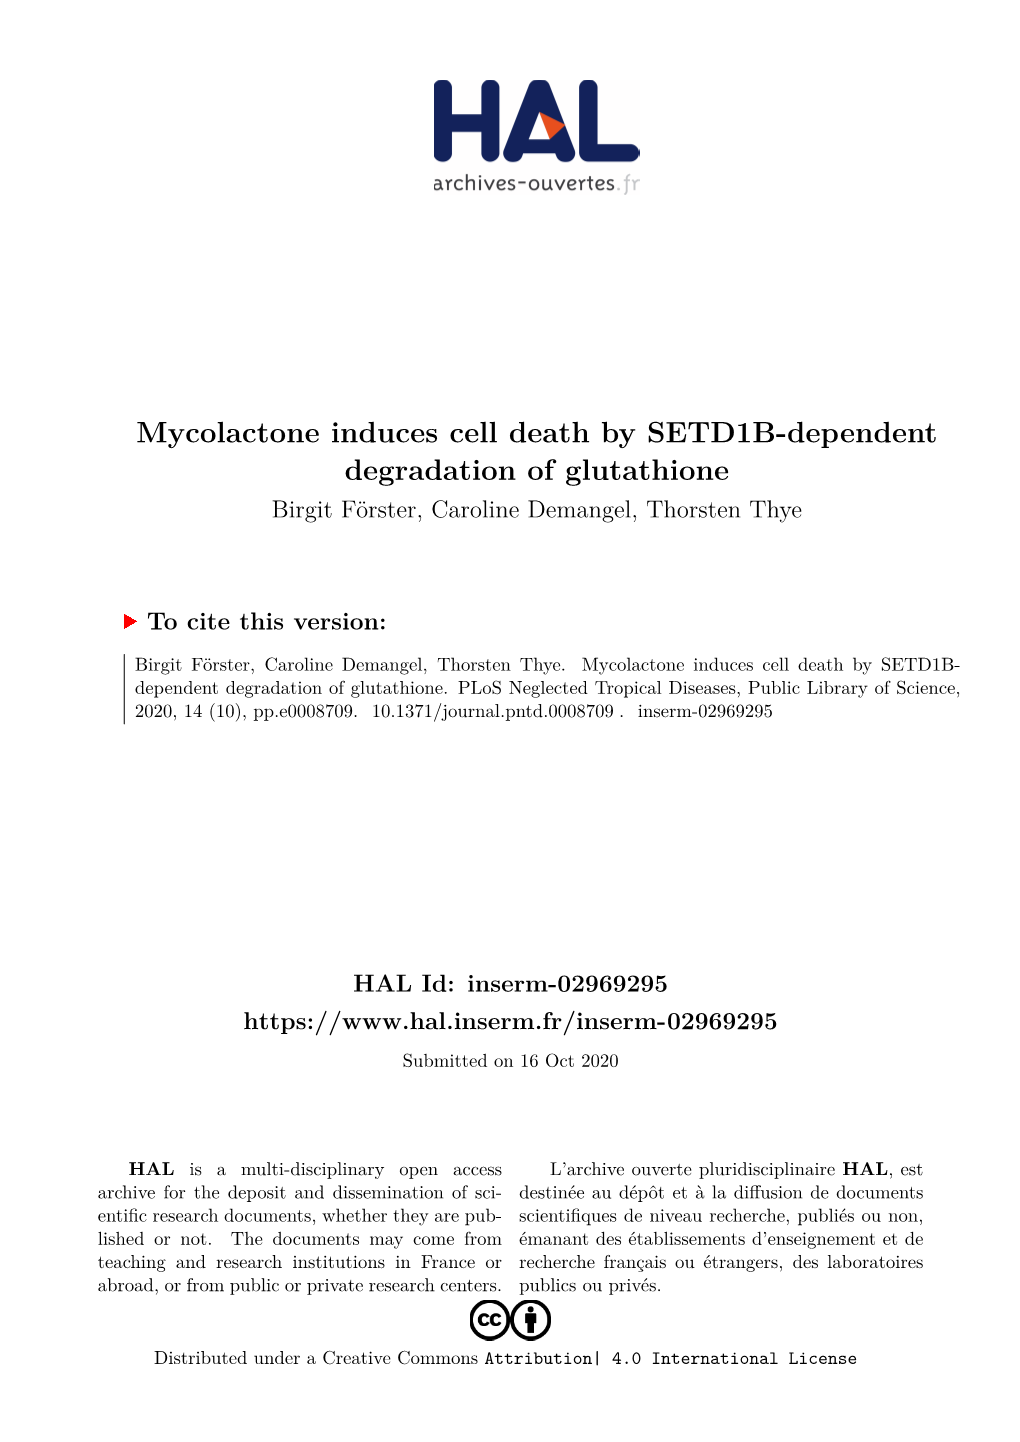 Mycolactone Induces Cell Death by SETD1B-Dependent Degradation of Glutathione Birgit Förster, Caroline Demangel, Thorsten Thye